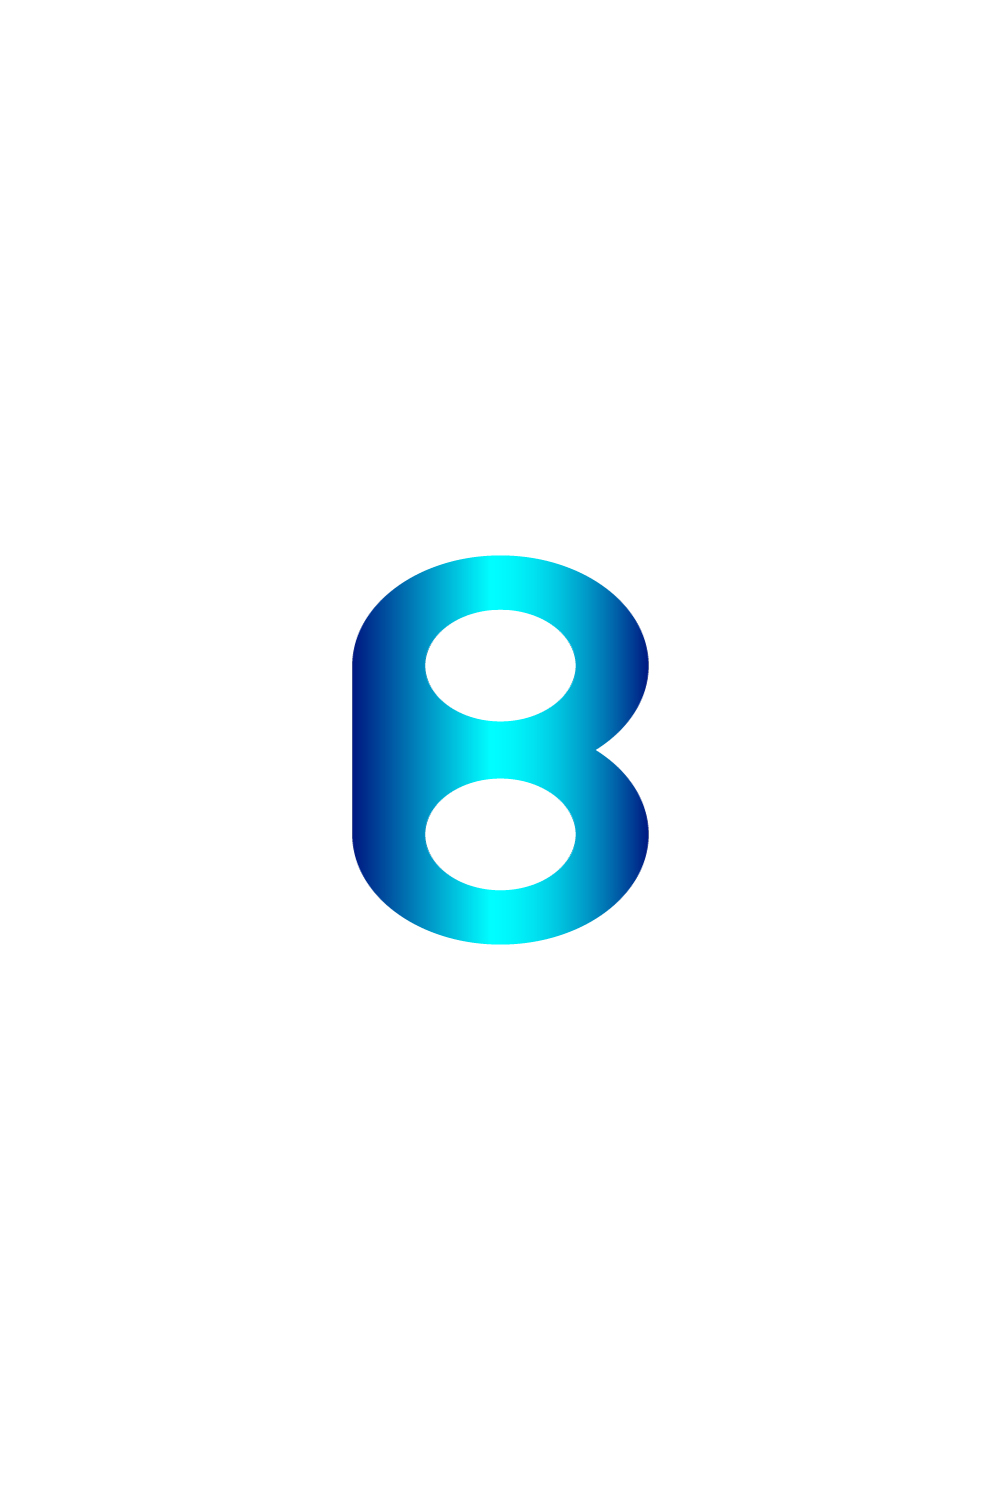 Gradient B Logo Abstract Letter B Logo Design B Letter Logo pinterest preview image.